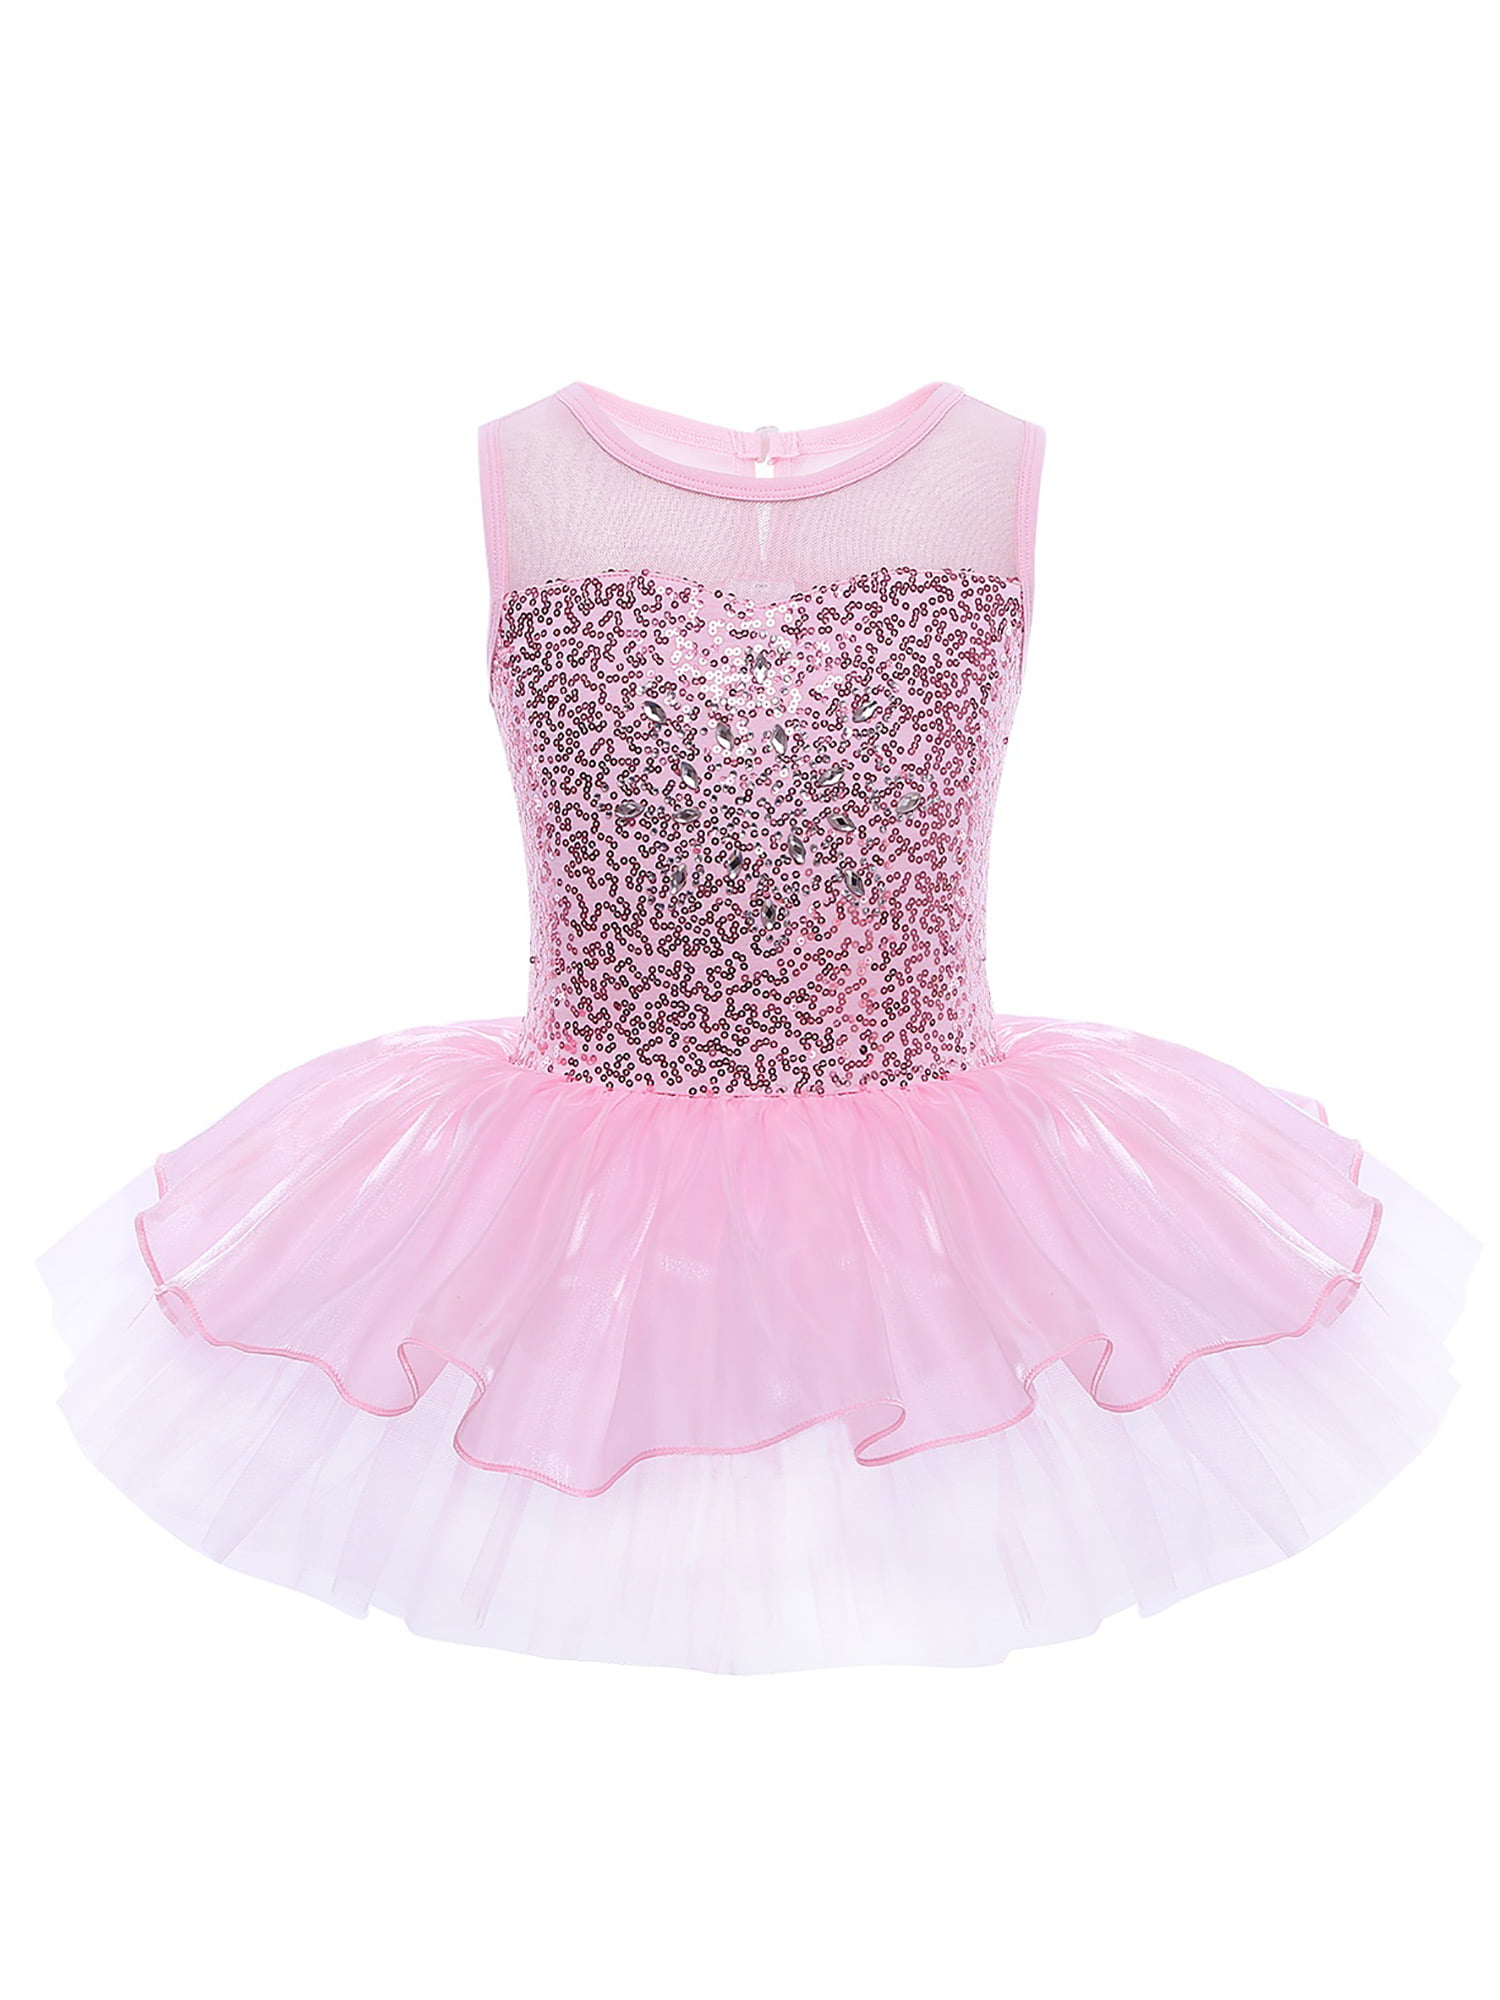 Details about   Girls Ballet Dance Dress Leotard Sequins Skating Ballerina Tutu Skirt Dancewear 